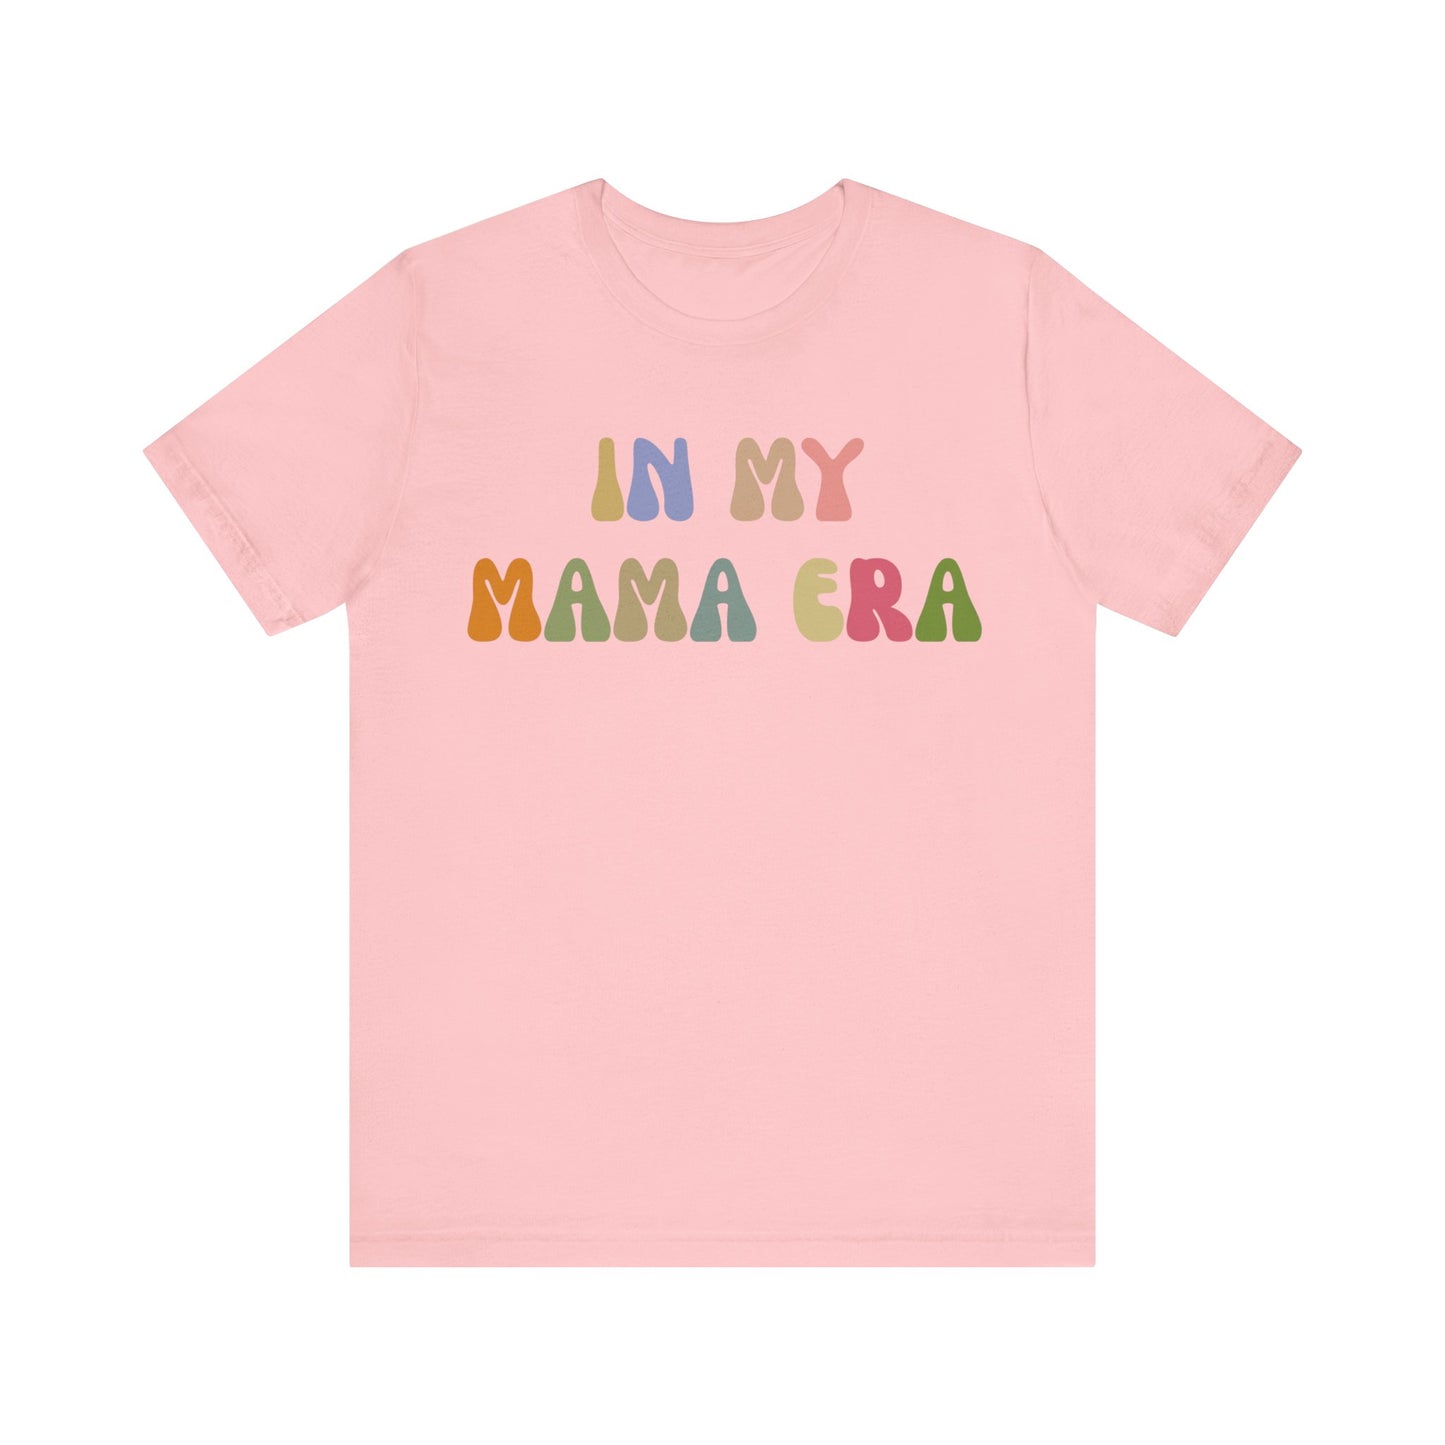 In My Mama Era Shirt, In My Mom Era, Mama T shirt, Mama Crewneck, Mama Shirt, Mom Shirt, Eras Shirt, New Mom T shirt, T1090